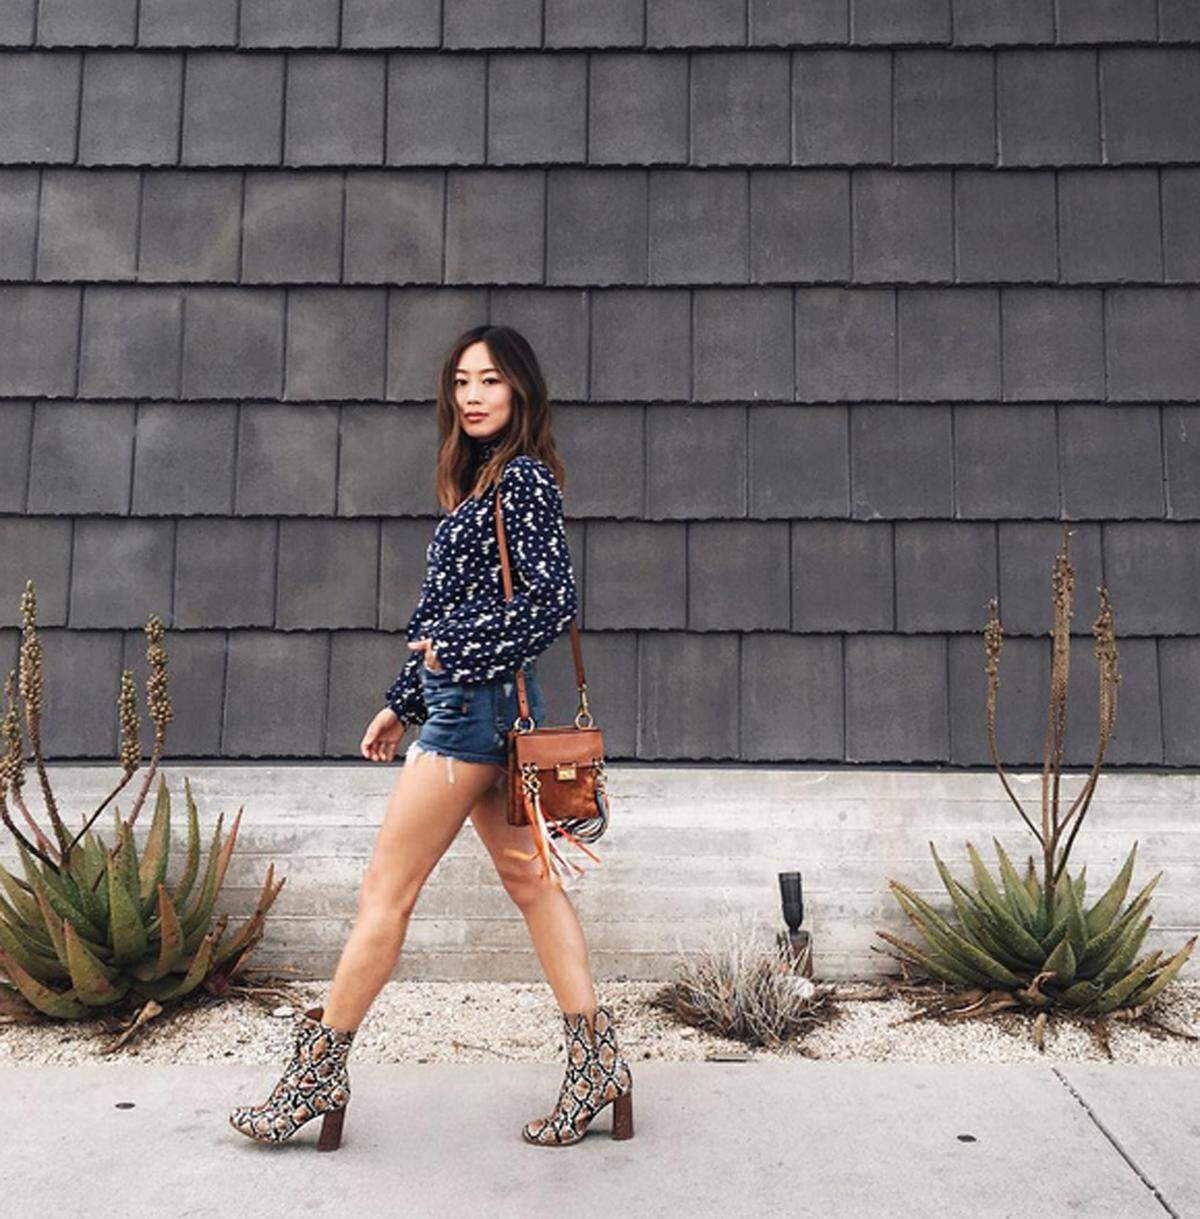 Die 29-jährige Interiordesignerin zeigt auf Instagram ihren L.A.-Style und ist damit sehr erfolgreich. Sie hat 3,4 Millionen Instagram-Follwer, eine starke Präsenz auf Pinterest und Youtube sowie eine kleine Mode-und Schmuck-Kollektion.